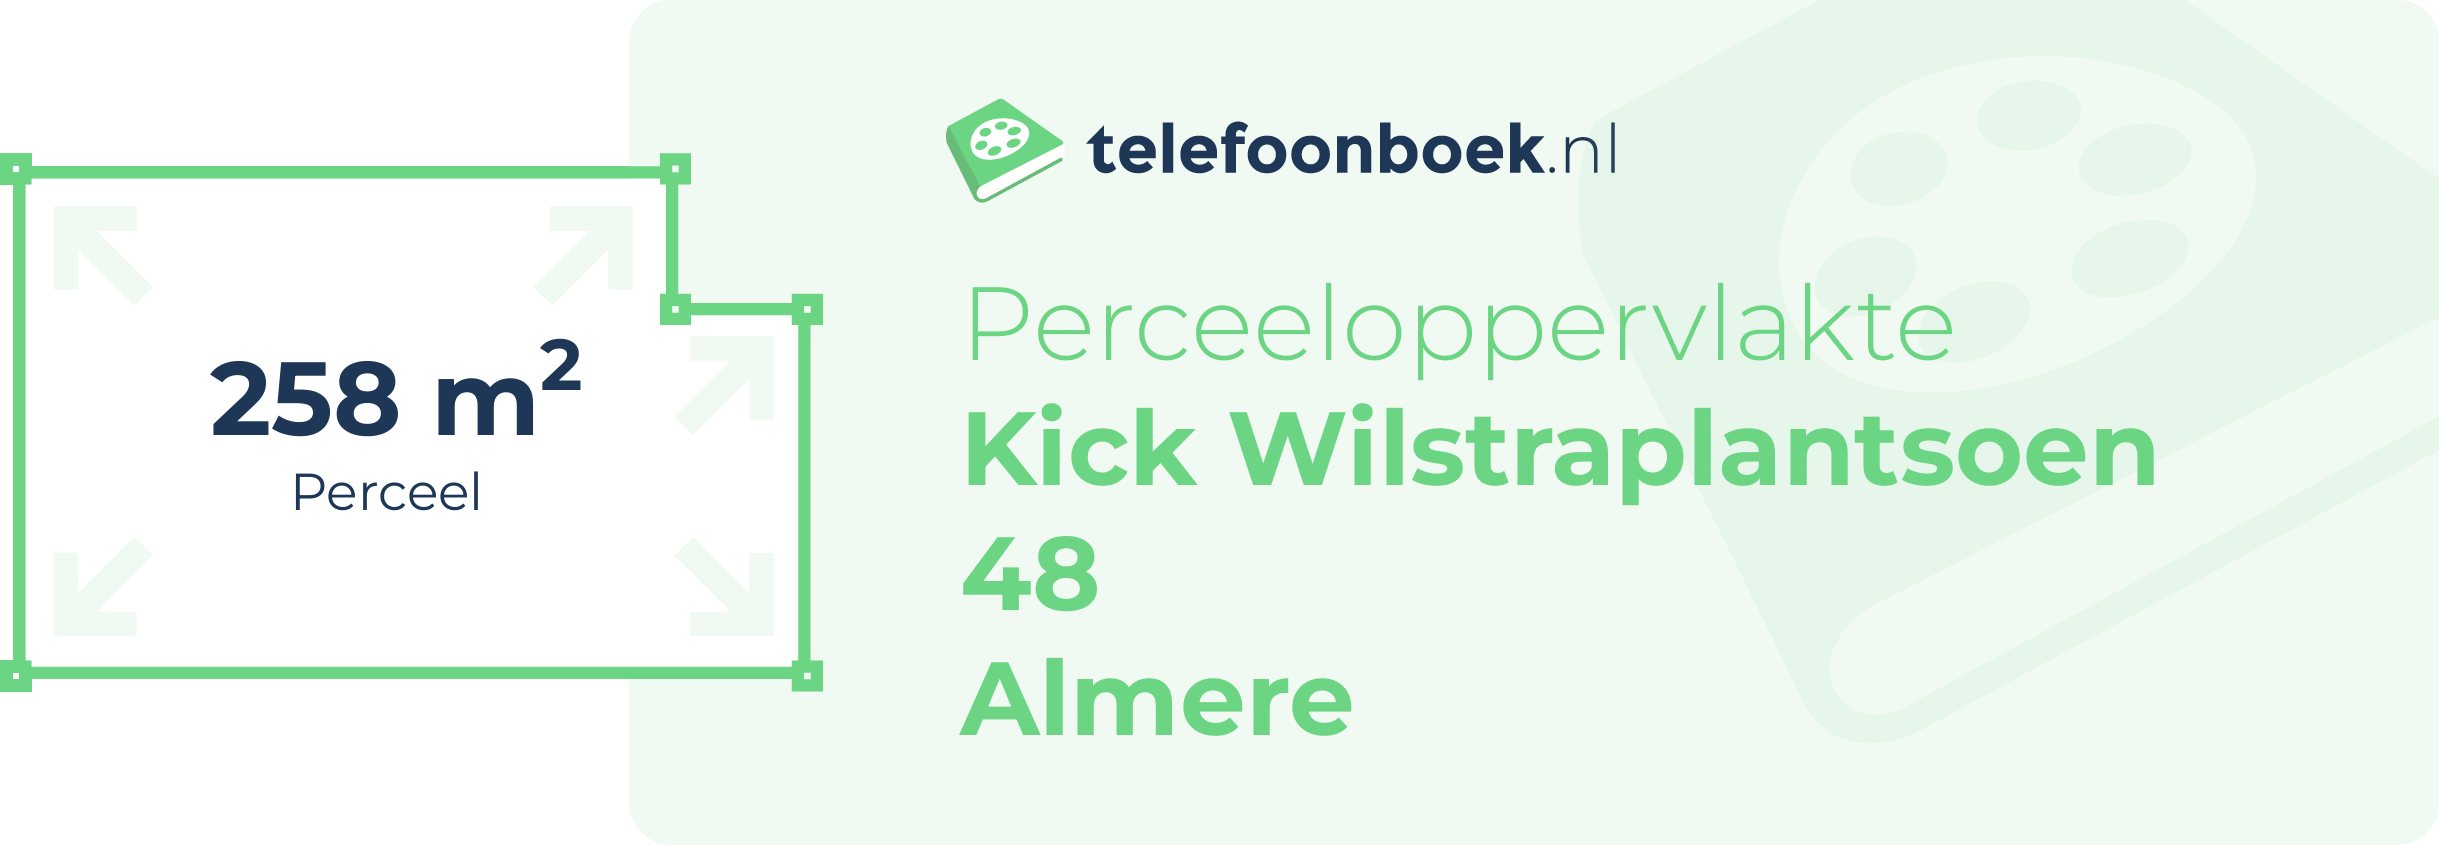 Perceeloppervlakte Kick Wilstraplantsoen 48 Almere